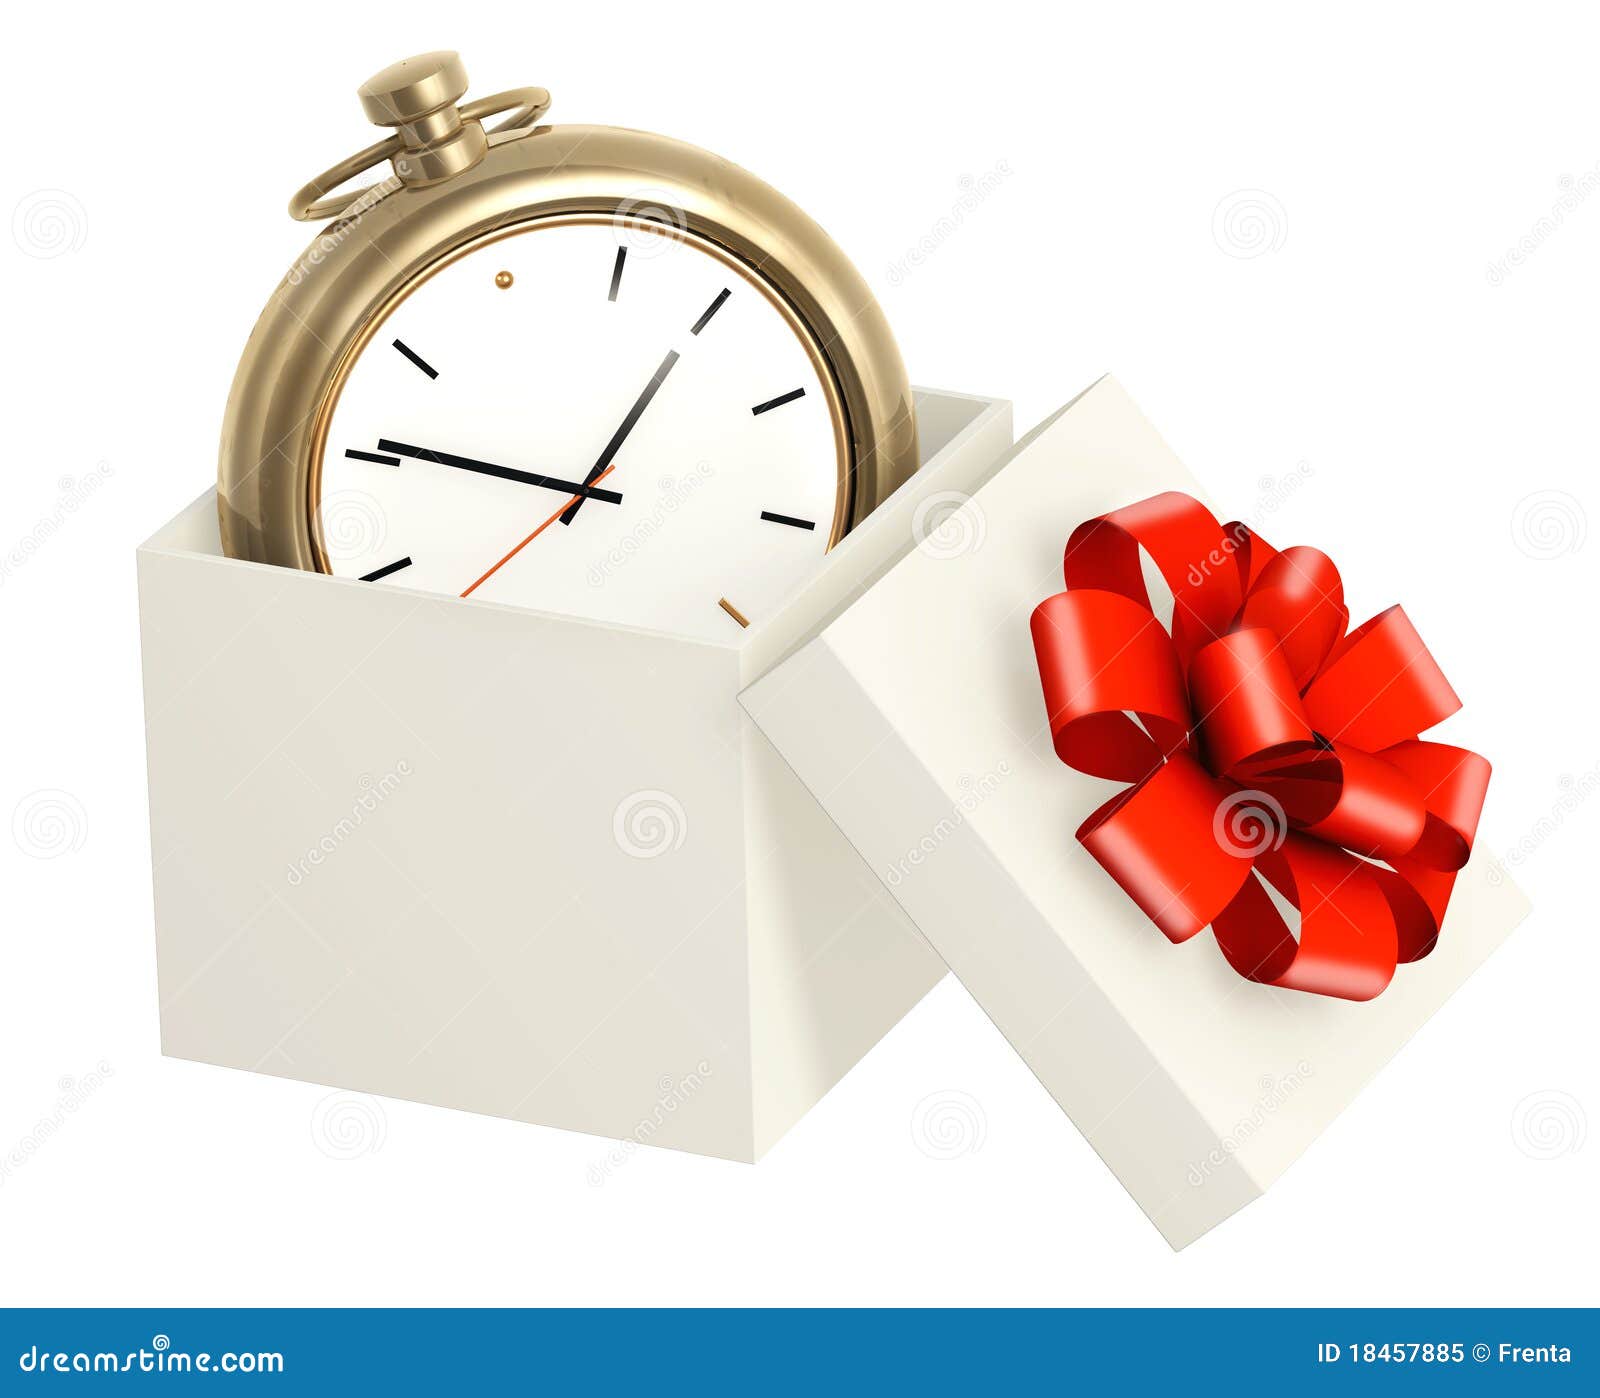 Часы в подарок мужчине почему нельзя. Час в подарок. Время подарков. Подарить время. Подарок часы иллюстрация.